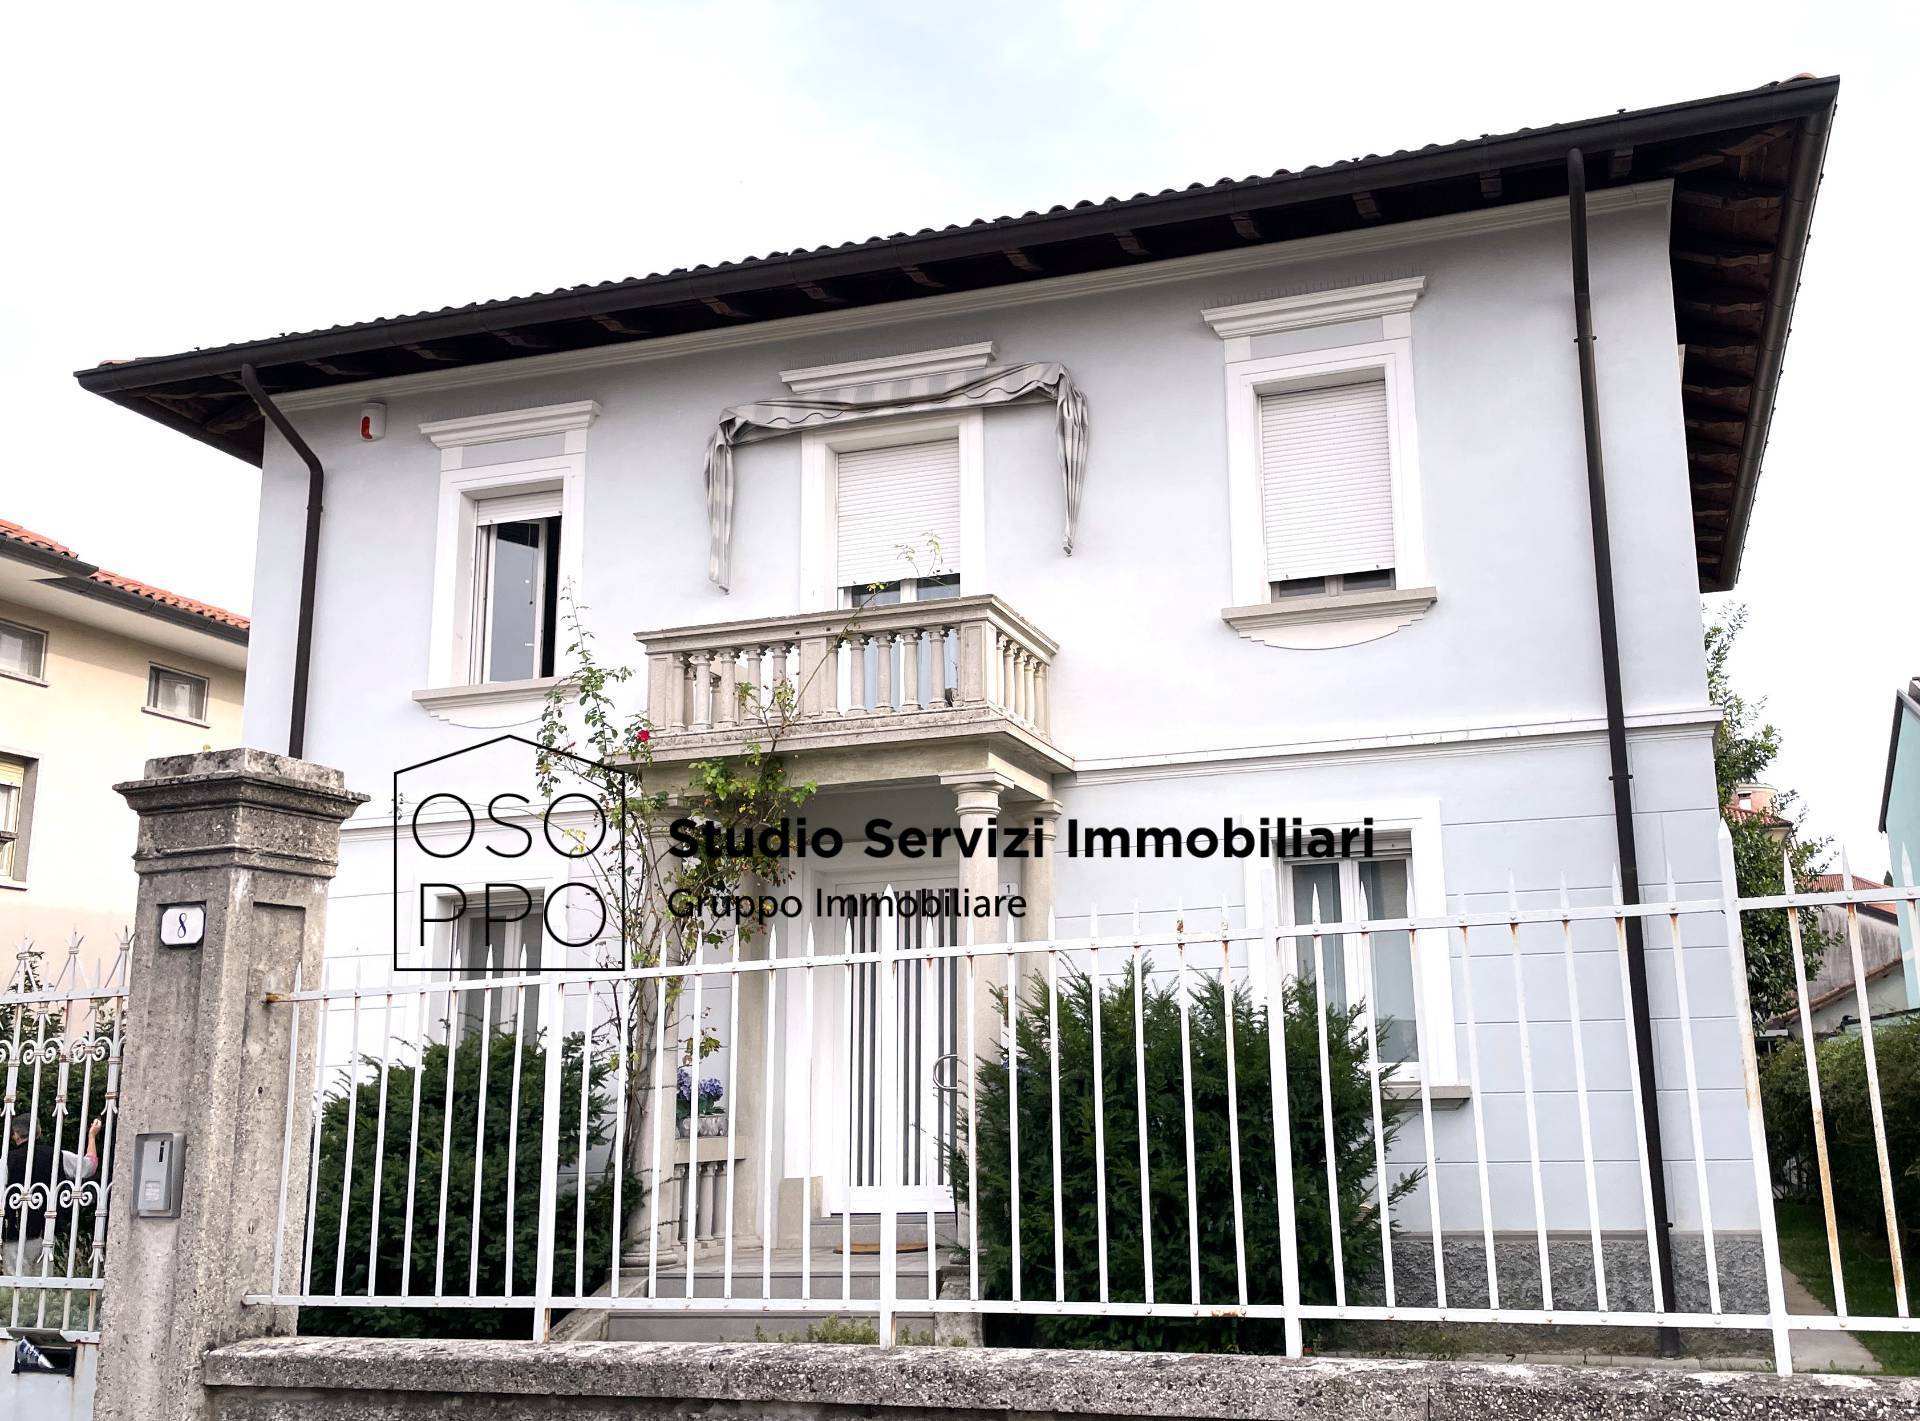 Appartamento in vendita a Udine, 6 locali, zona Località: VialeVenezia, prezzo € 315.000 | CambioCasa.it